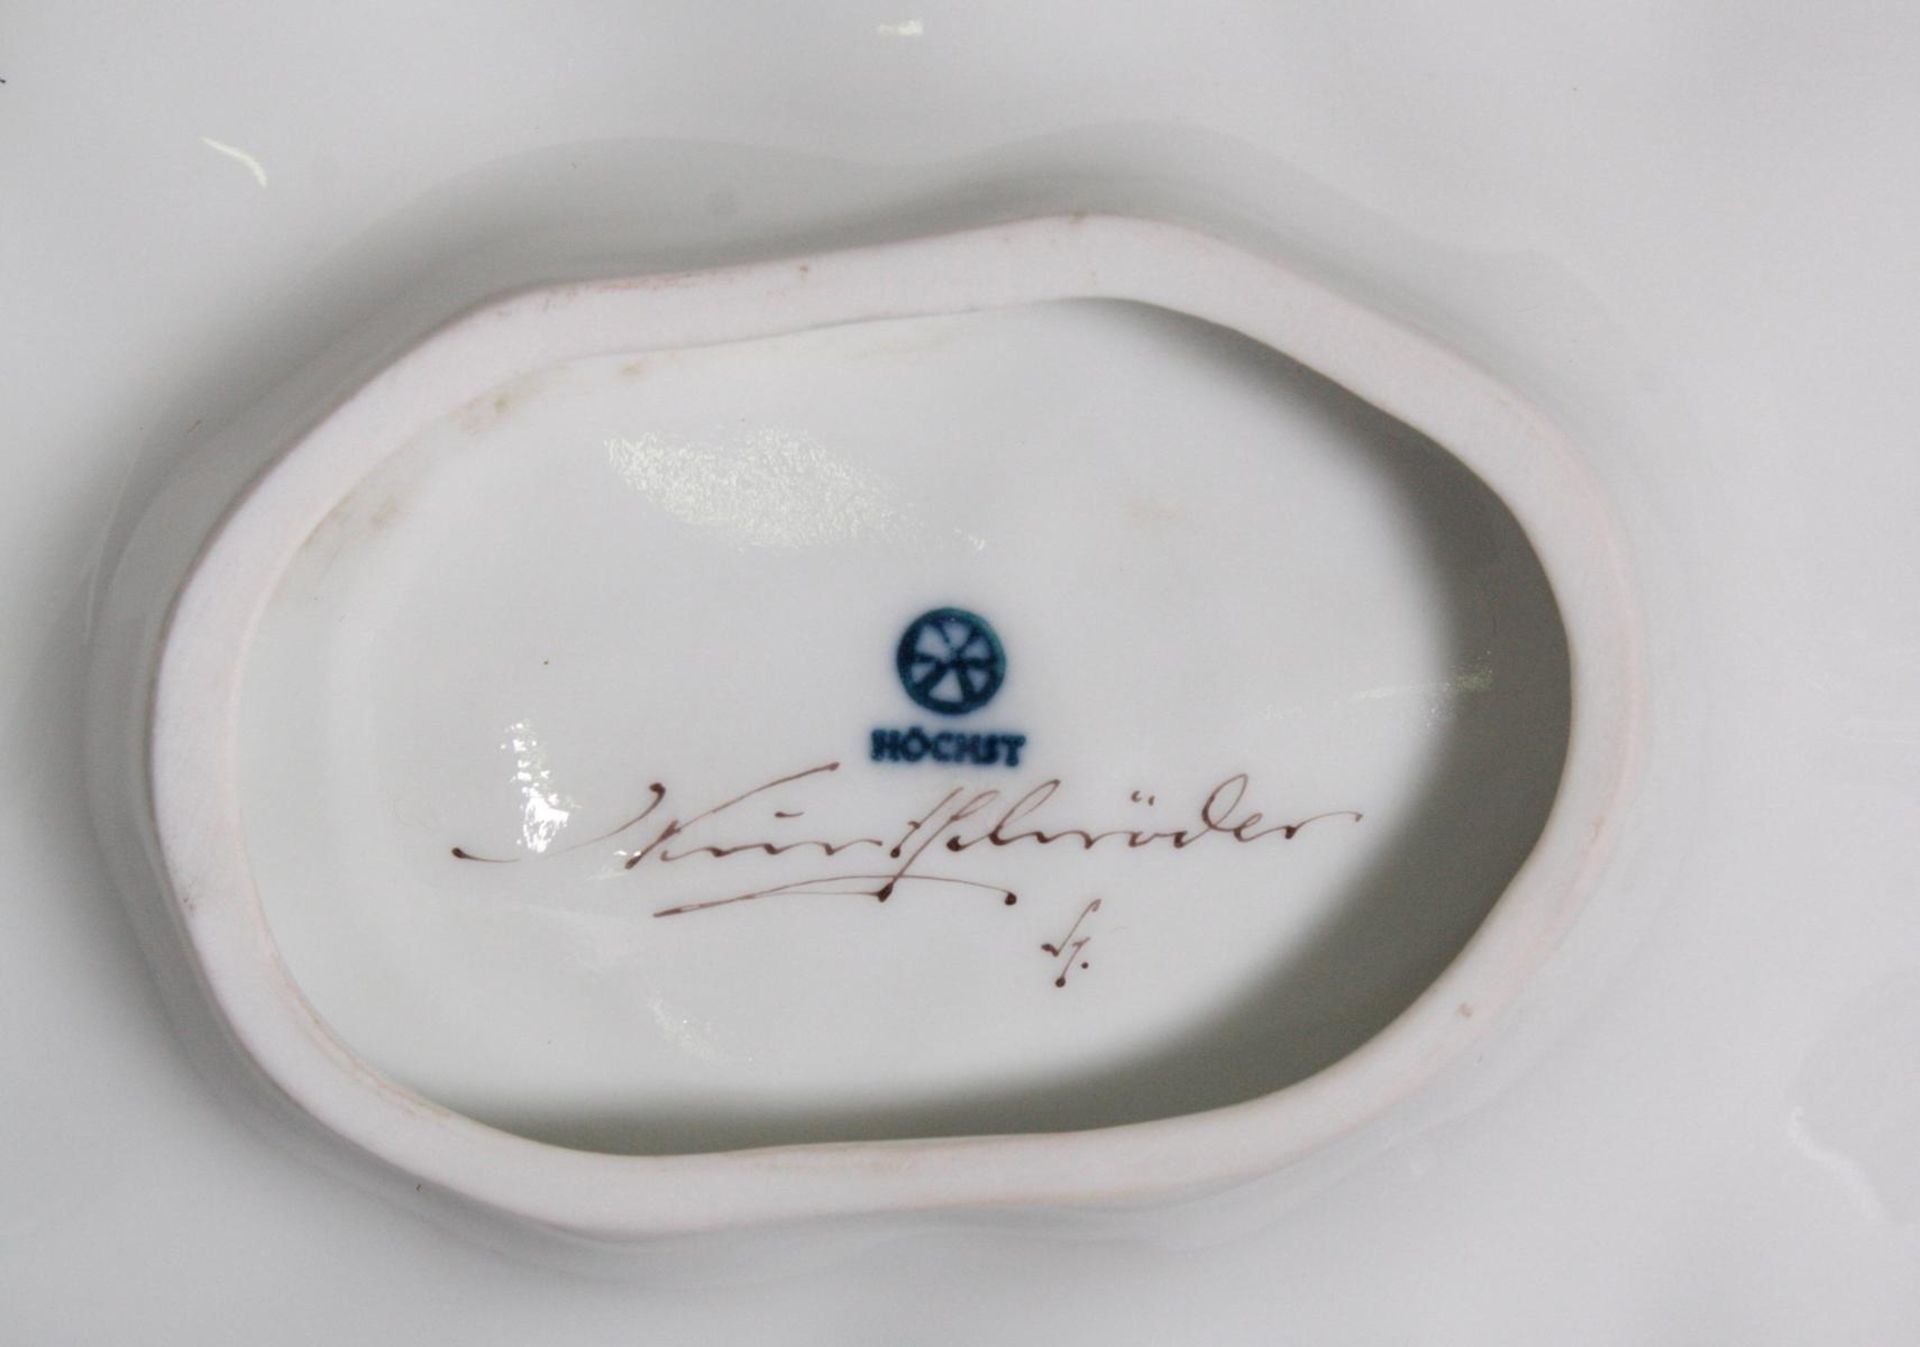 Blattschale, Höchst, signiert Kurt SchröderReliefiertes Weißporzellan, im Spiegel Vögel auf Ast in - Image 2 of 2